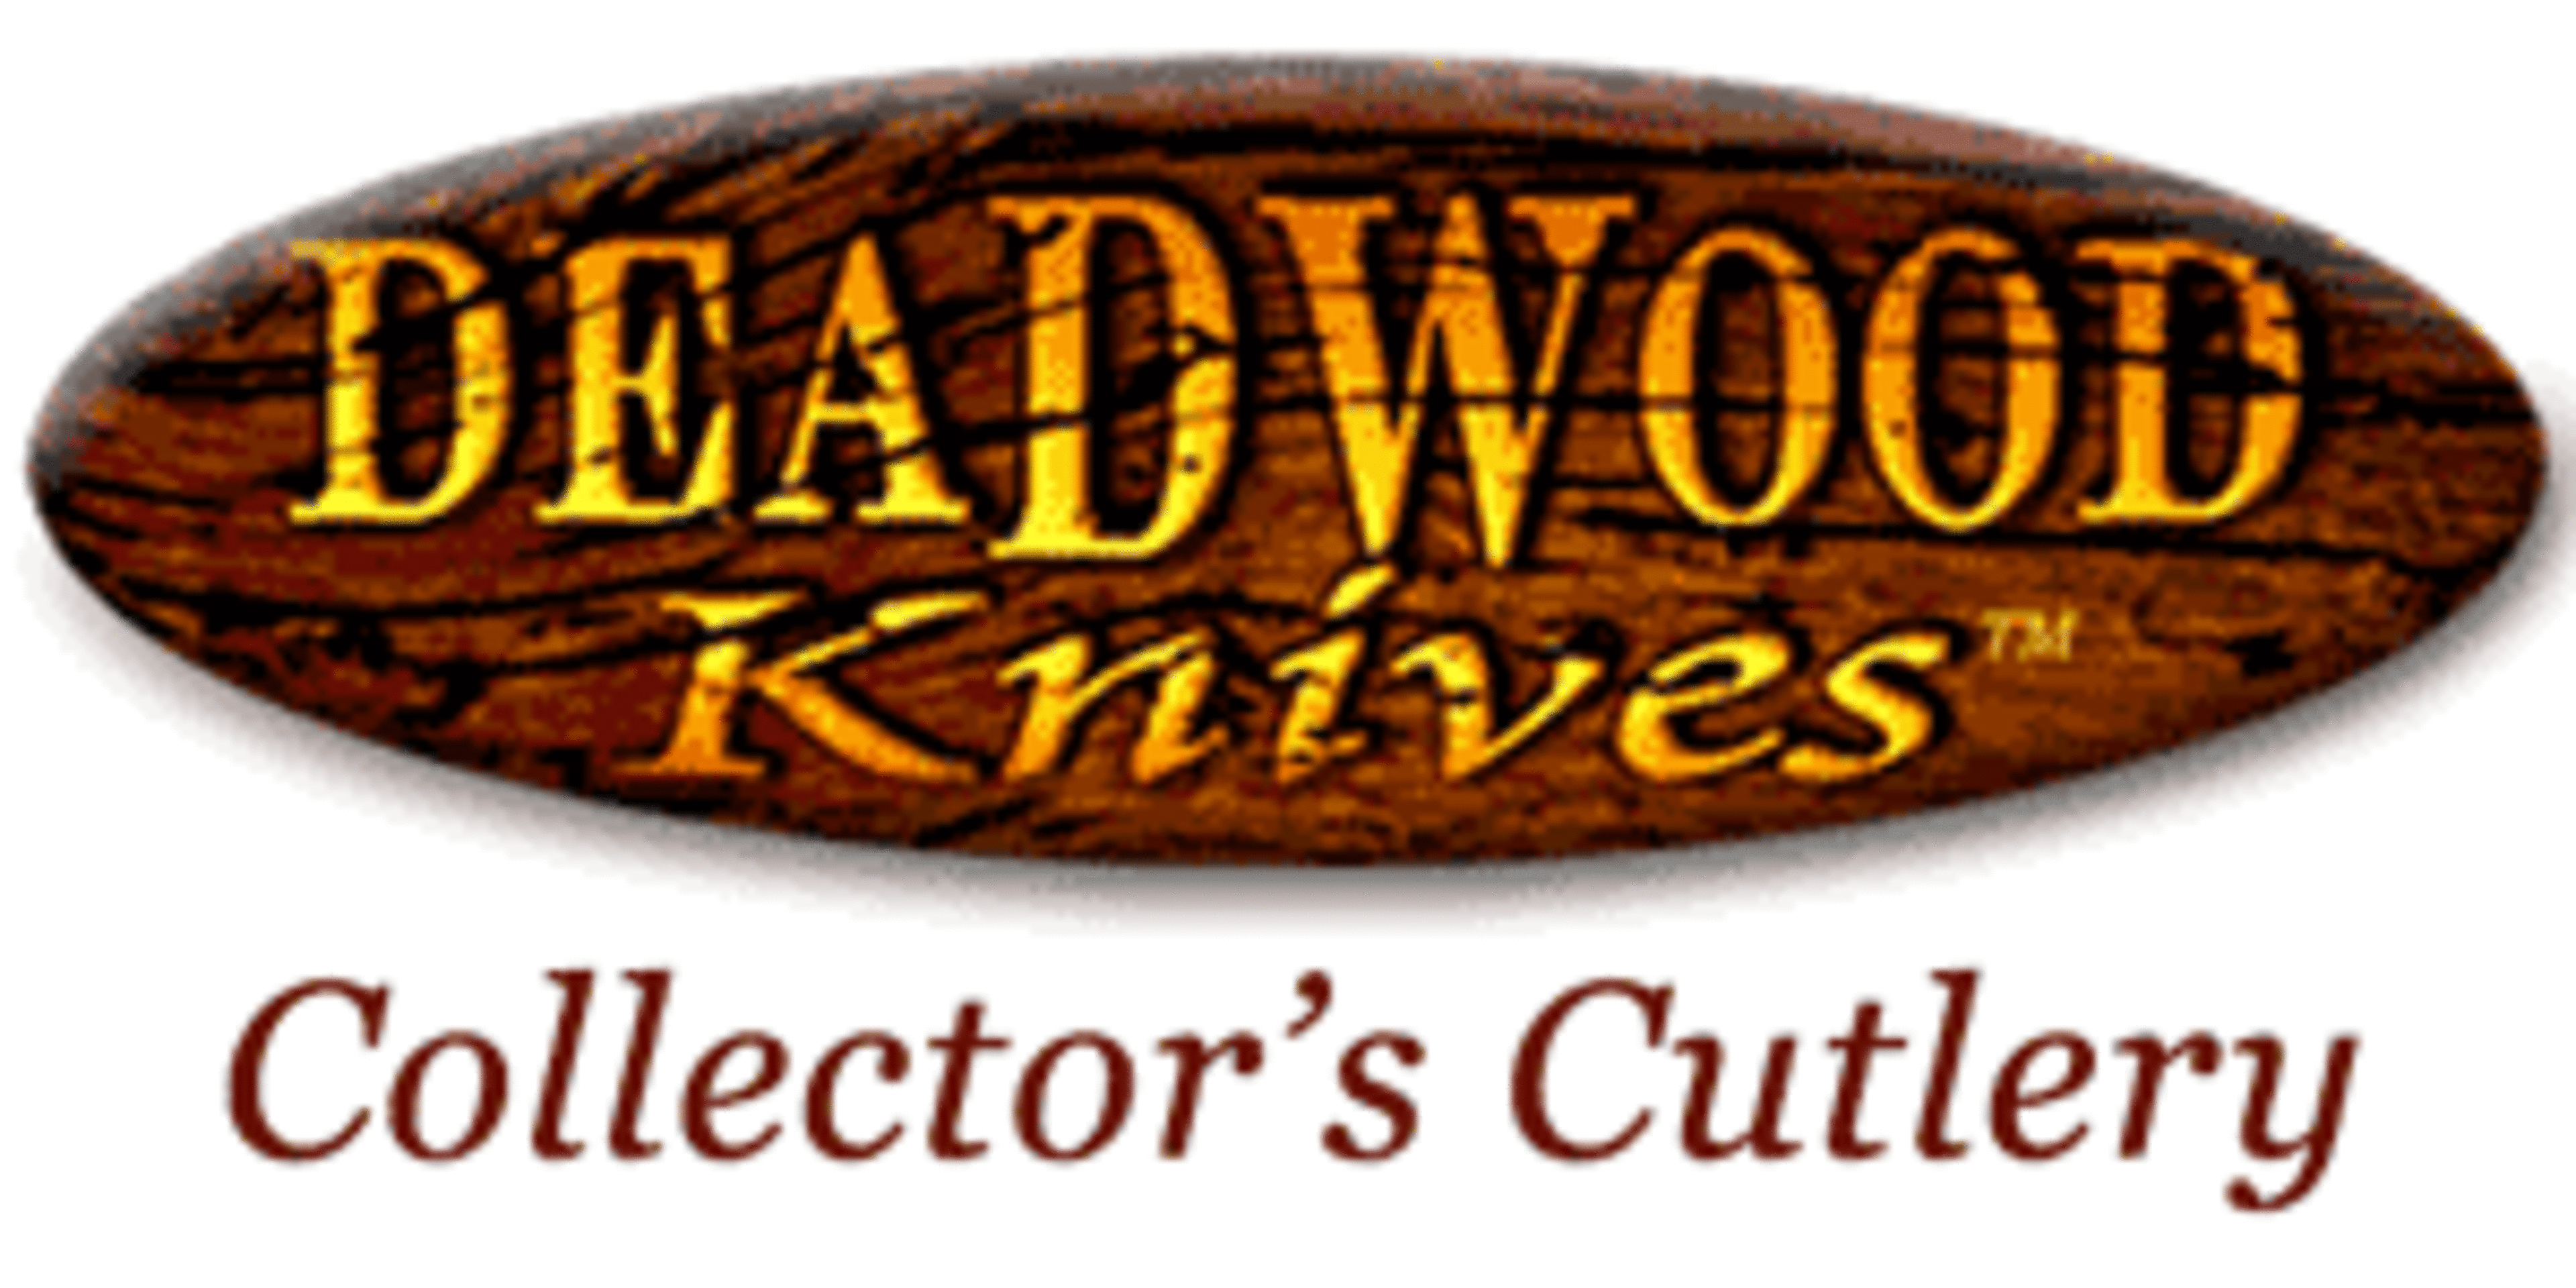 Deadwood KnivesCode